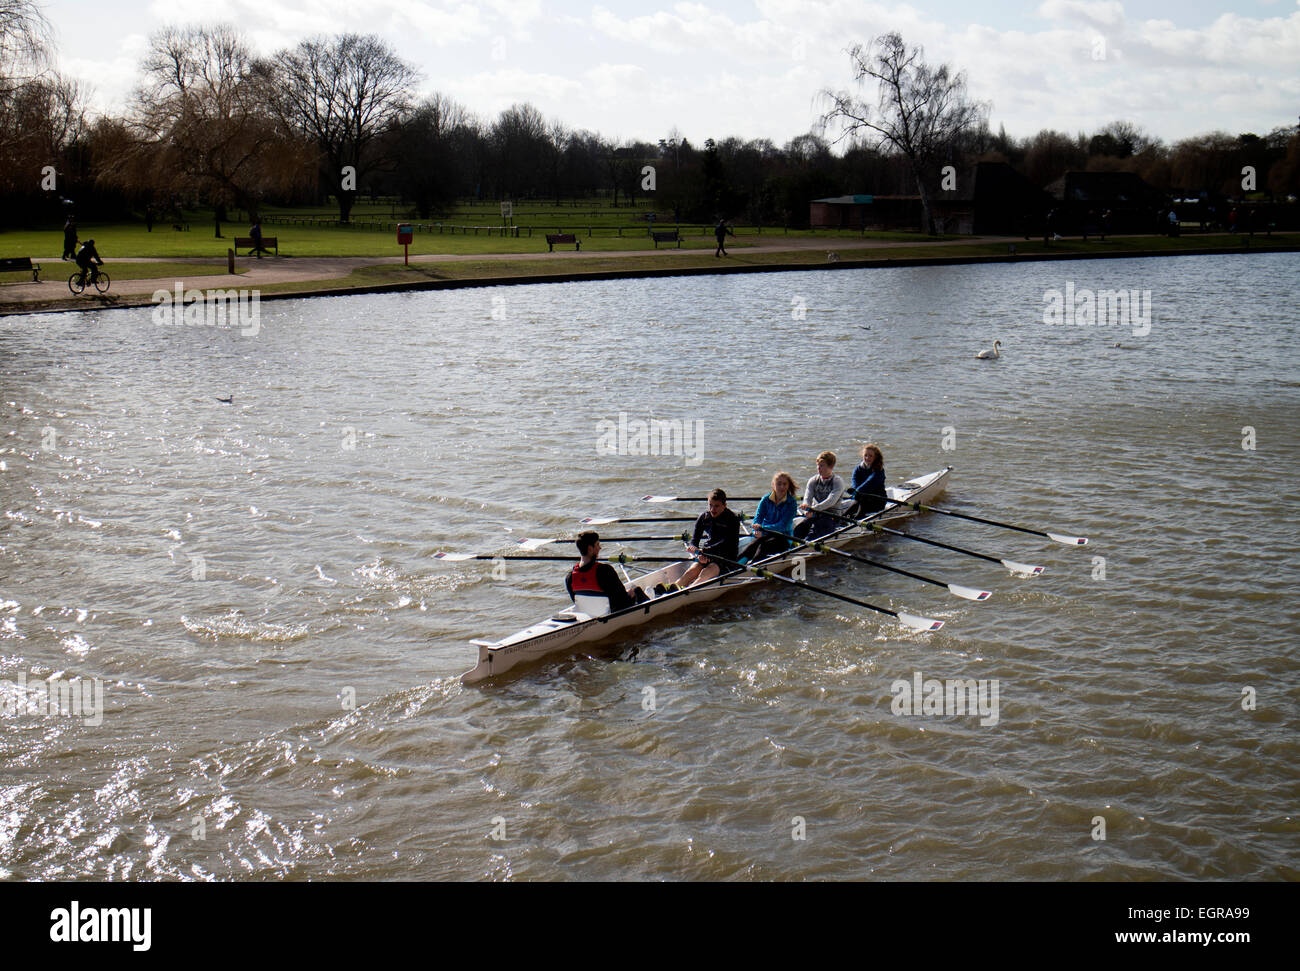 Coxed quattro canottaggio sul fiume Avon, Stratford-upon-Avon, Regno Unito Foto Stock